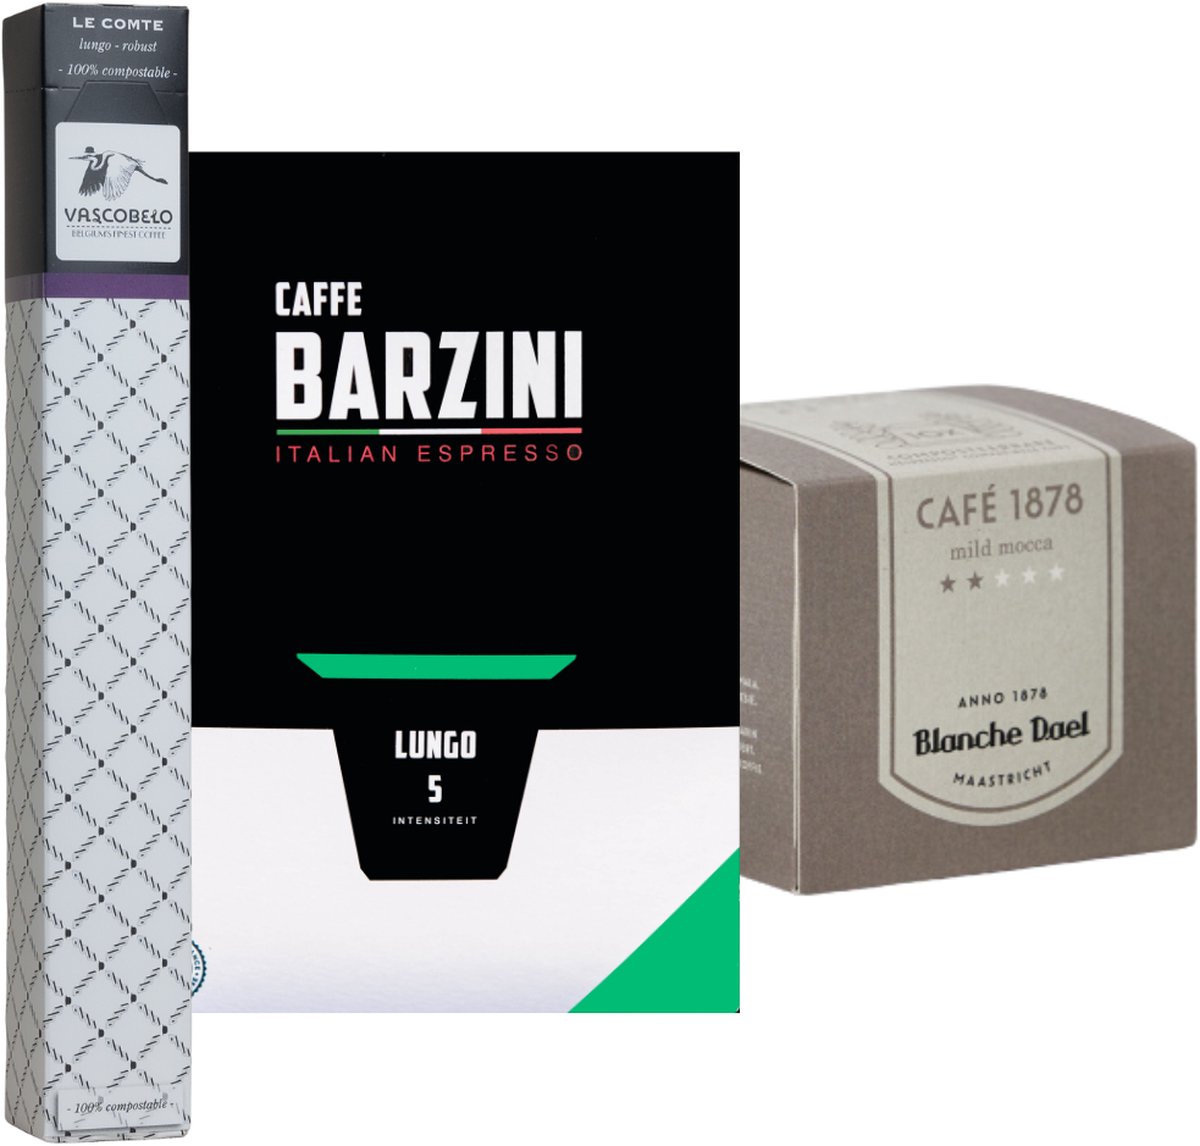 Koffiecups proefpakket Kruidig | 100 Cups, Barzini, Vascobelo & Blanche Dael koffie cups geschikt voor Nespresso apparaten